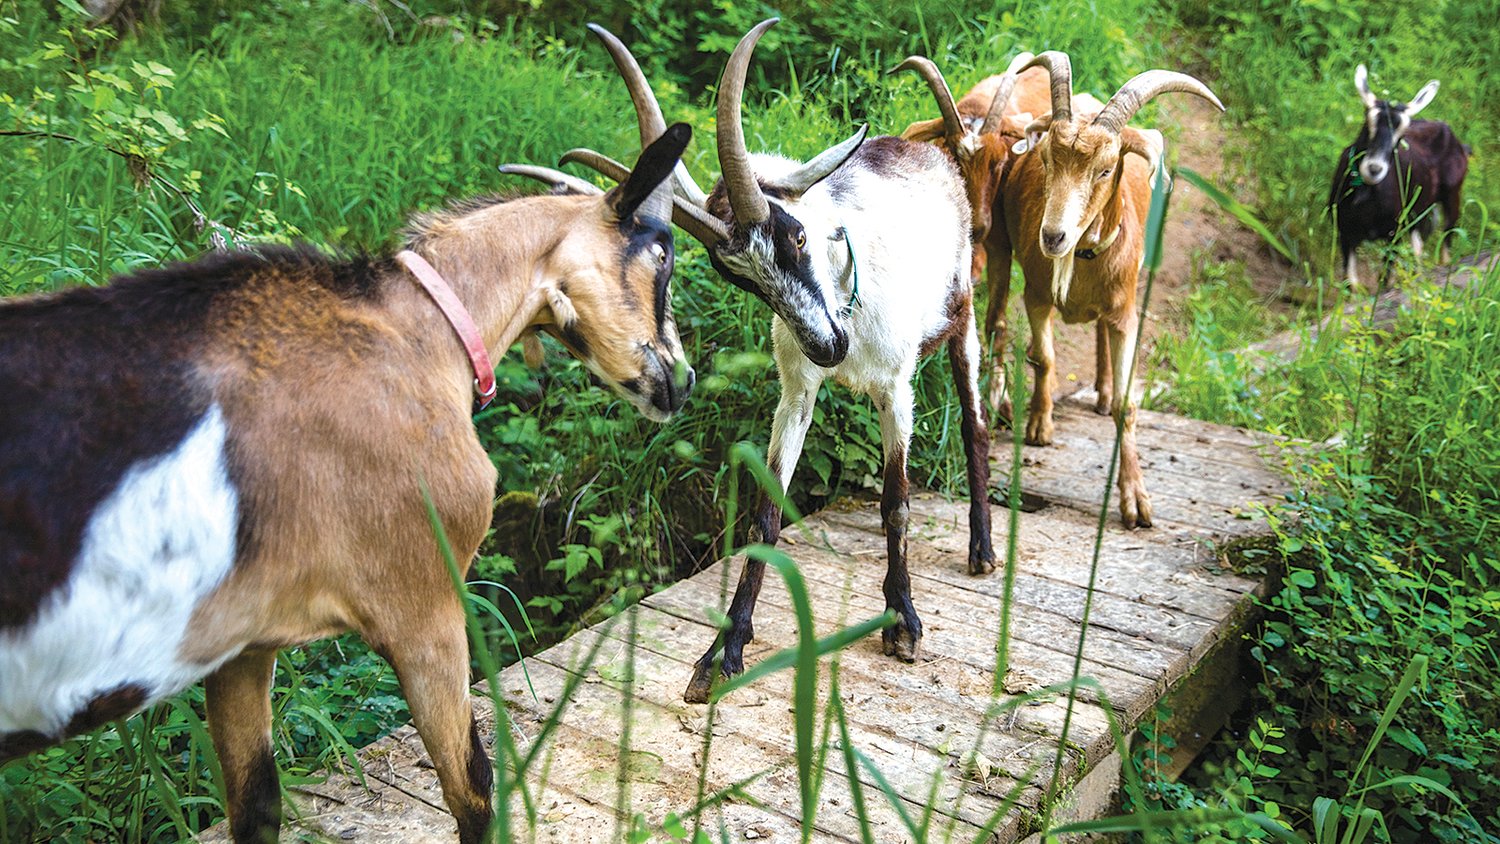 Goats butt heads on a bridge during a walk near Toledo.